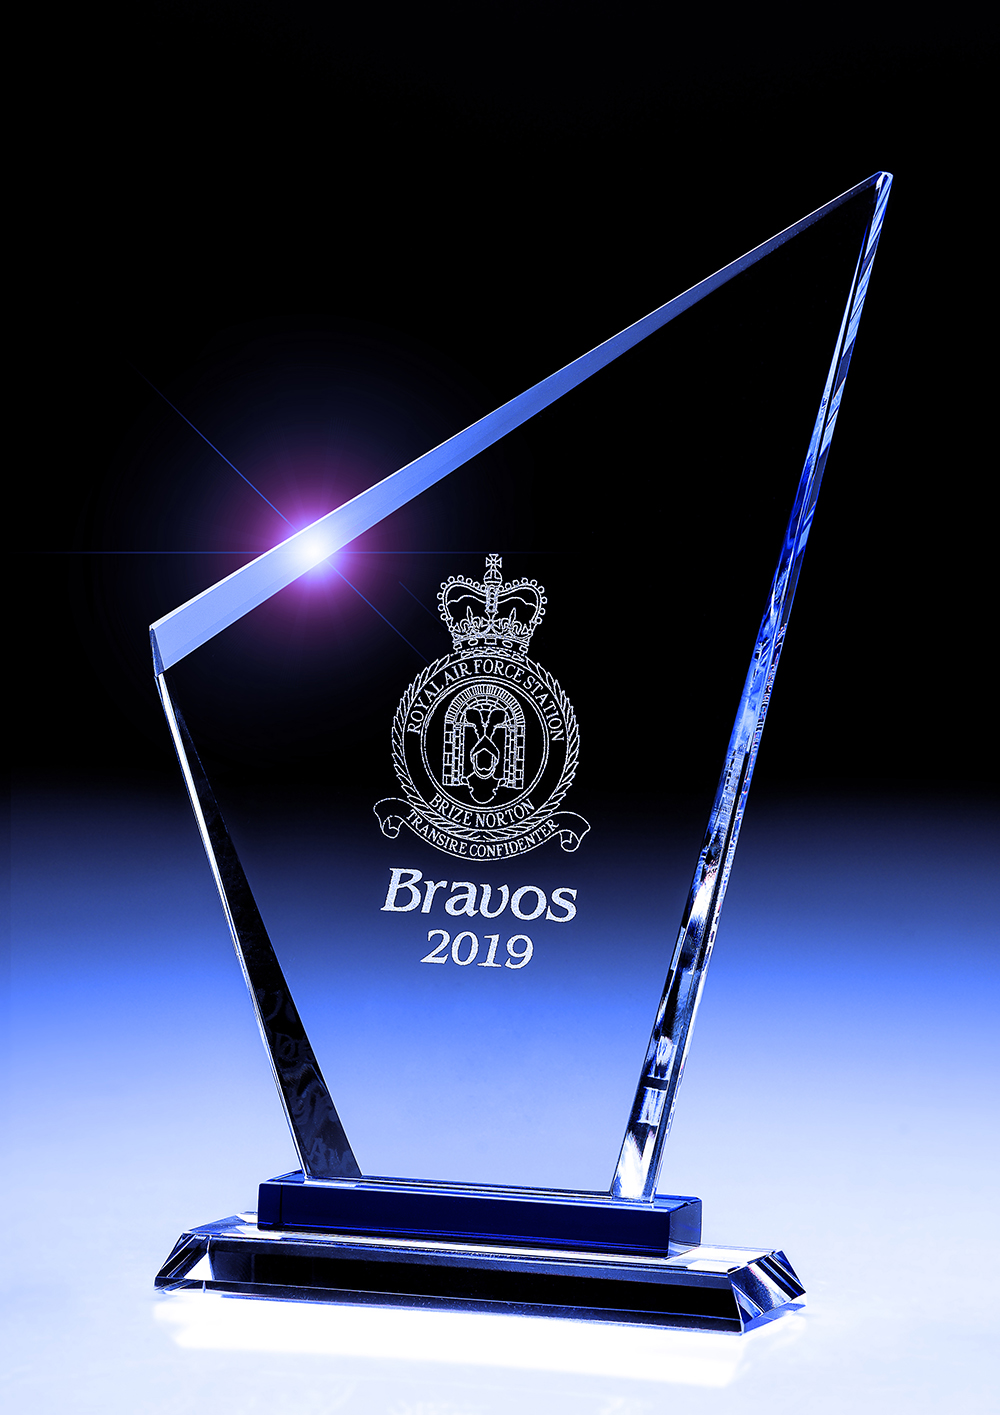 The BRAVOS 2019 Award